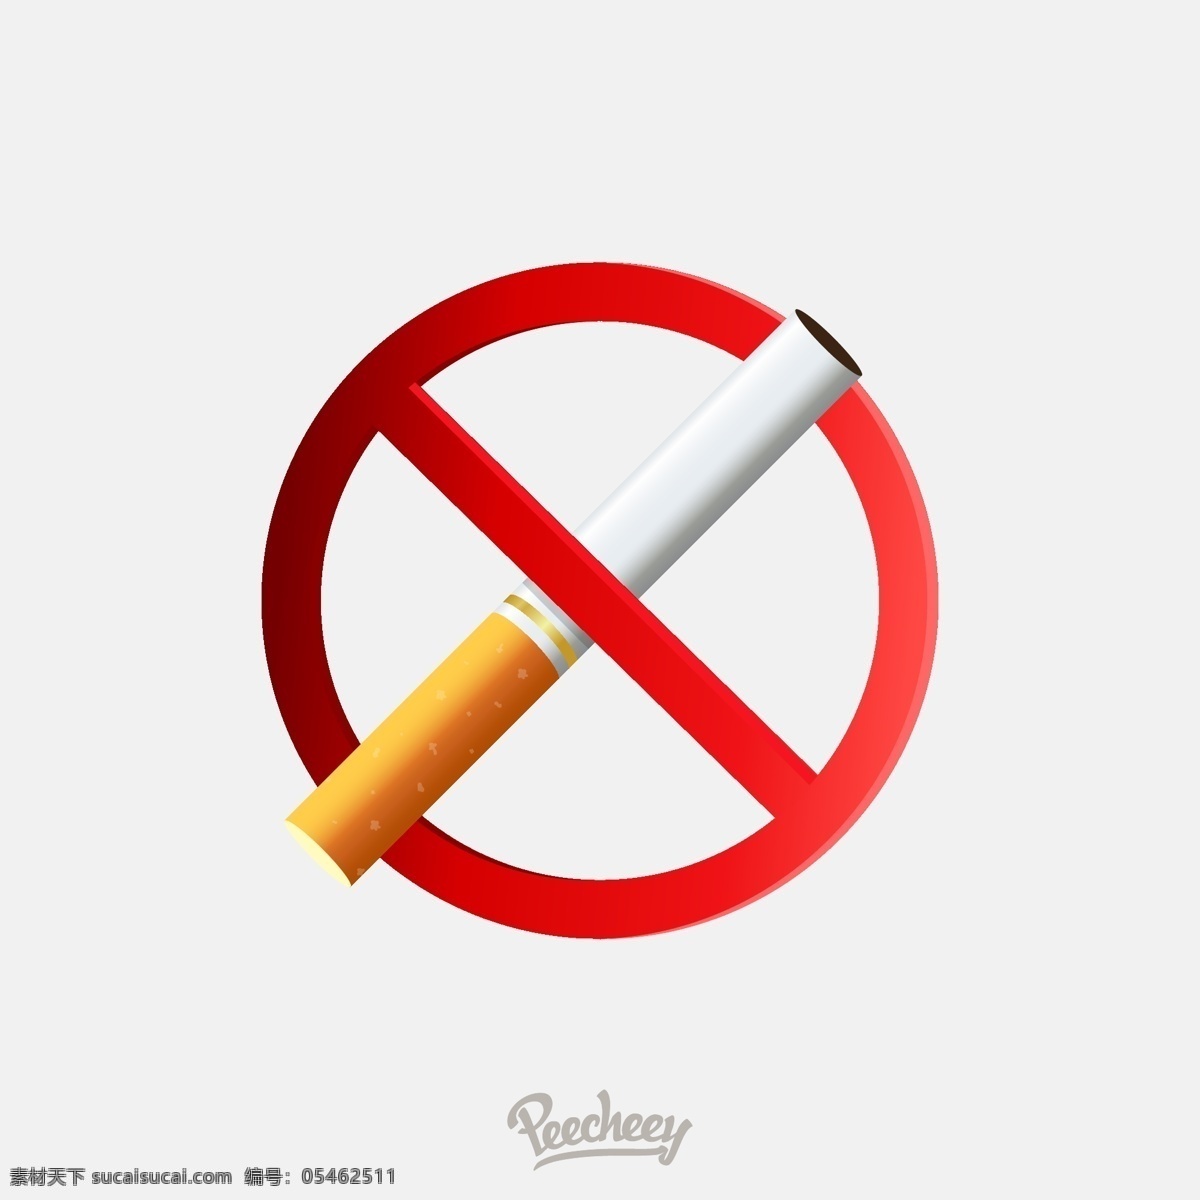 禁止烟草图标 图标 禁止图标 禁止 图标设计 矢量素材 烟草图标 烟草